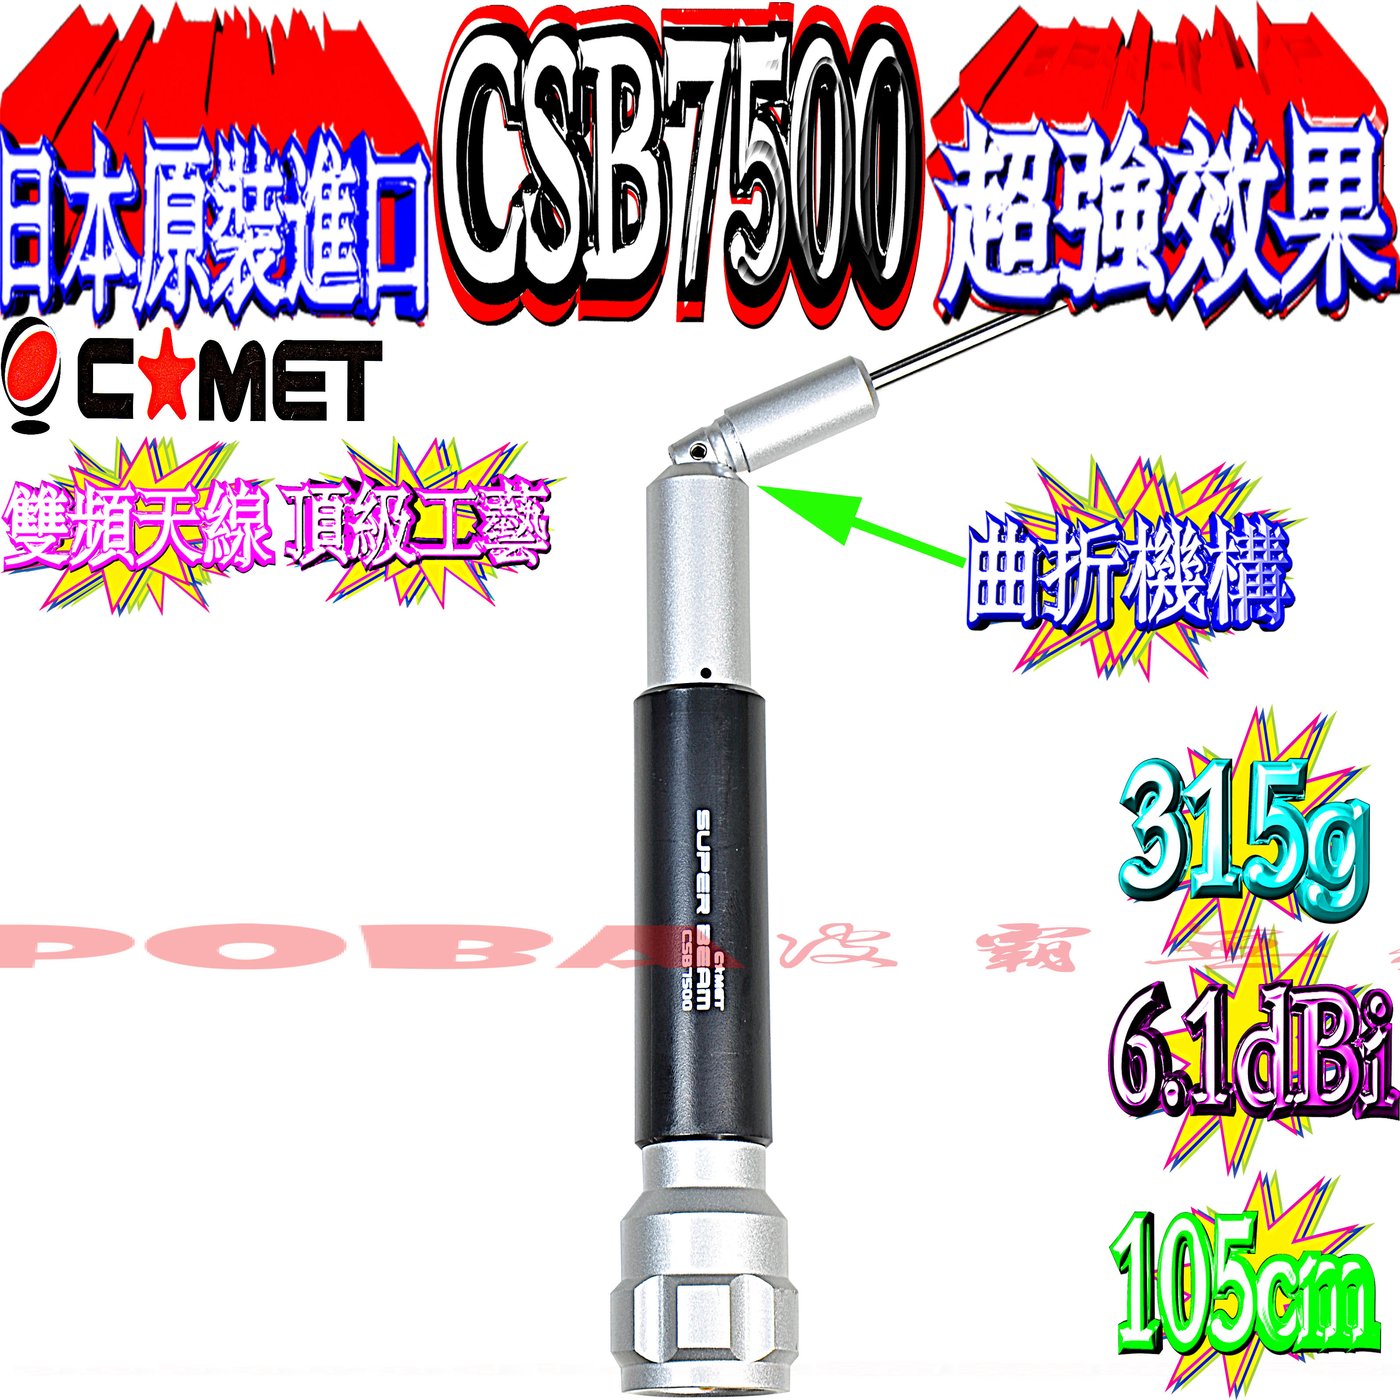 ☆波霸無線電☆CSB7500 日本原裝粗獷特殊設計型雙頻天線6.14dBi 105cm